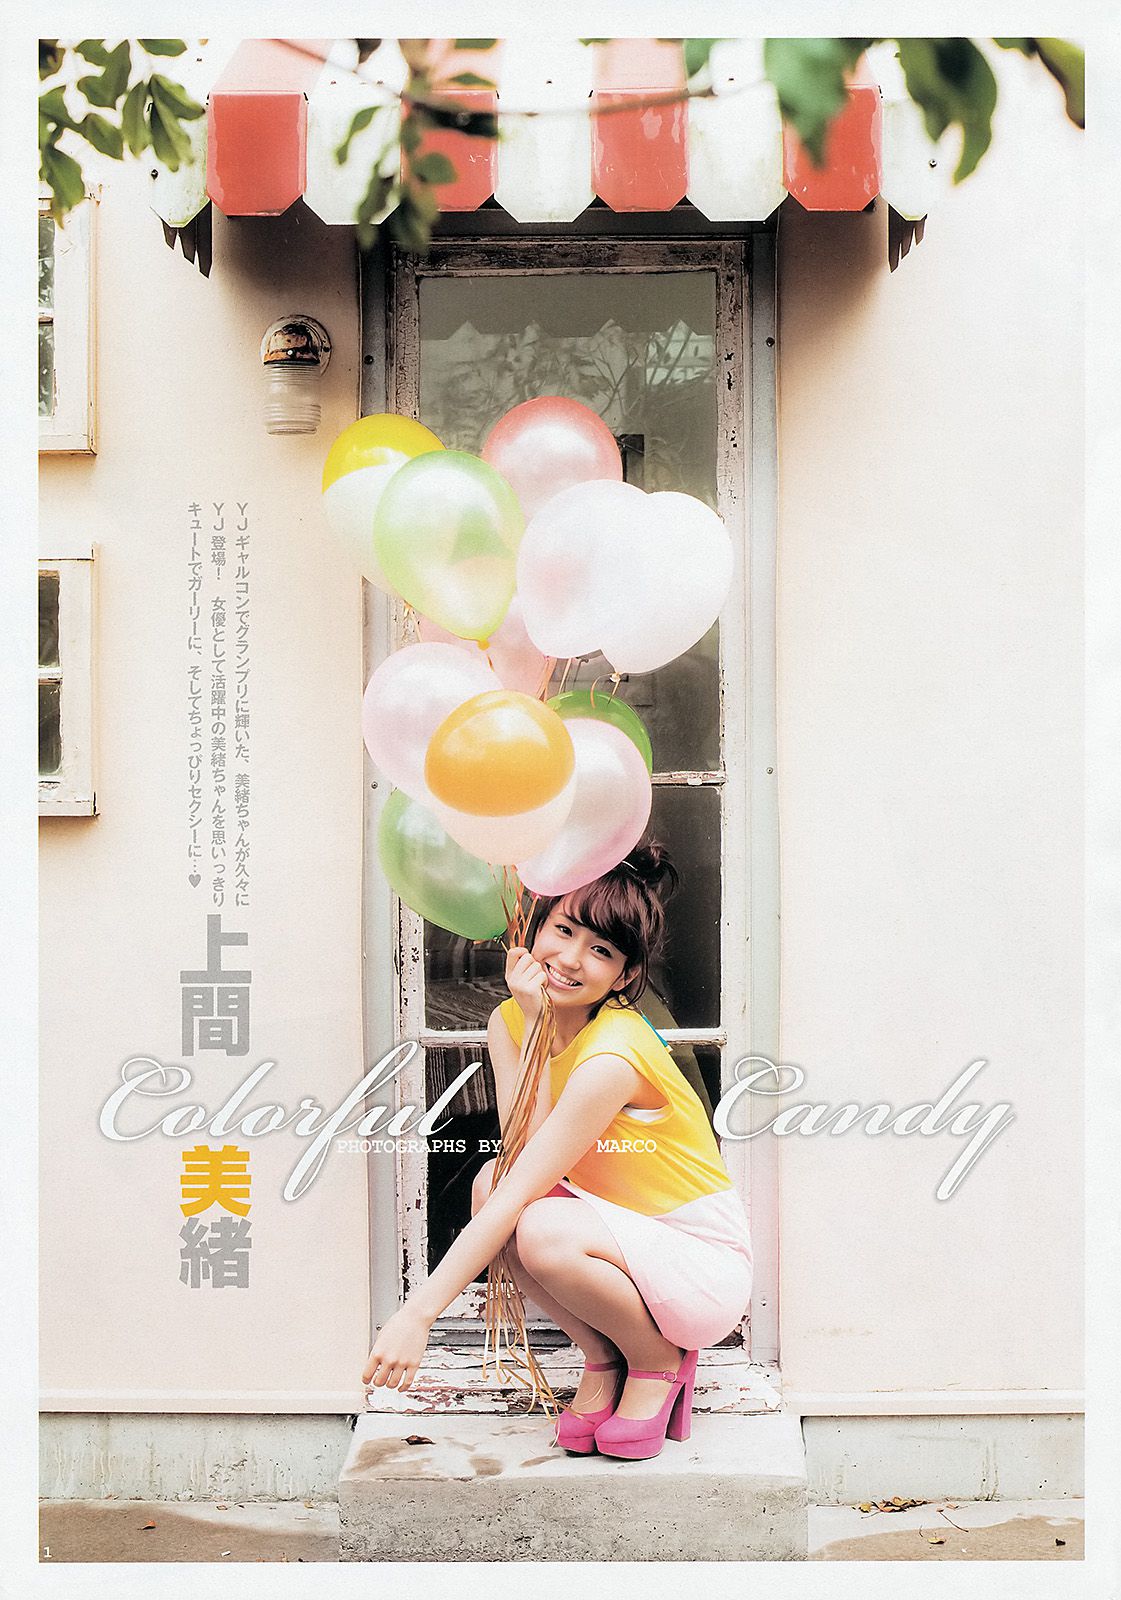 AKB48グループ 天野麻菜 上間美緒 [週刊ヤングジャンプ] 2013年No.20 写真杂志/(19P)